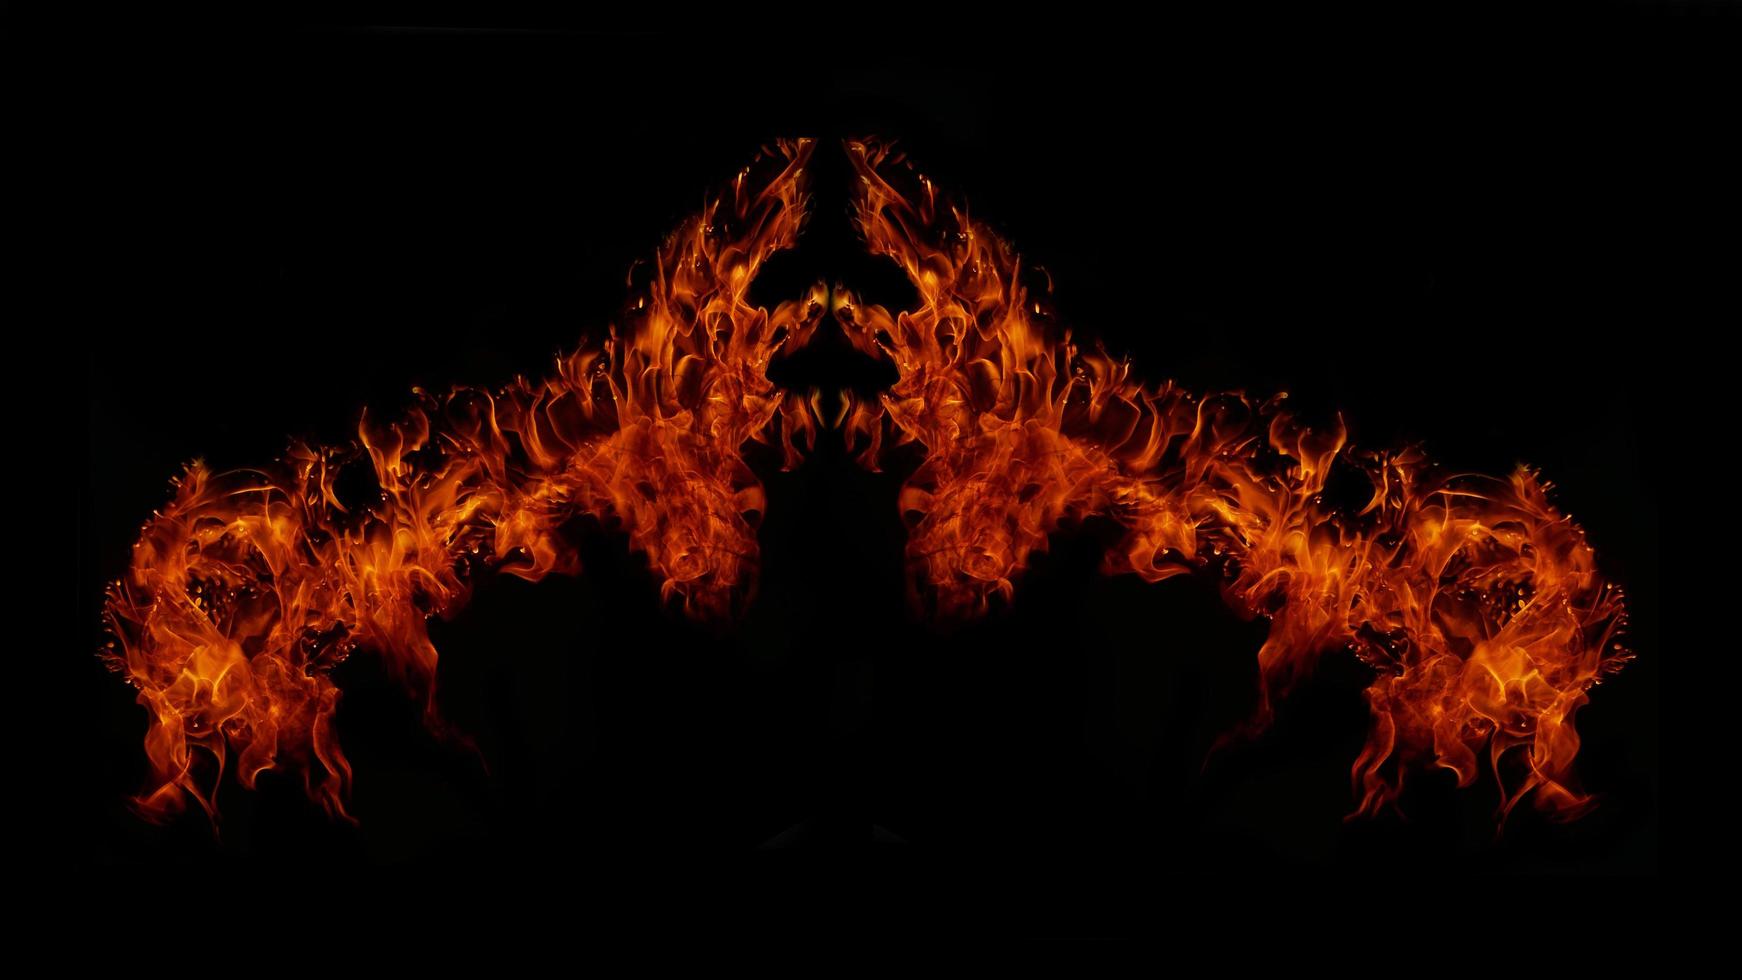 une belle flamme en forme comme imaginé. comme de l'enfer, montrant une ferveur dangereuse et fougueuse, fond noir photo